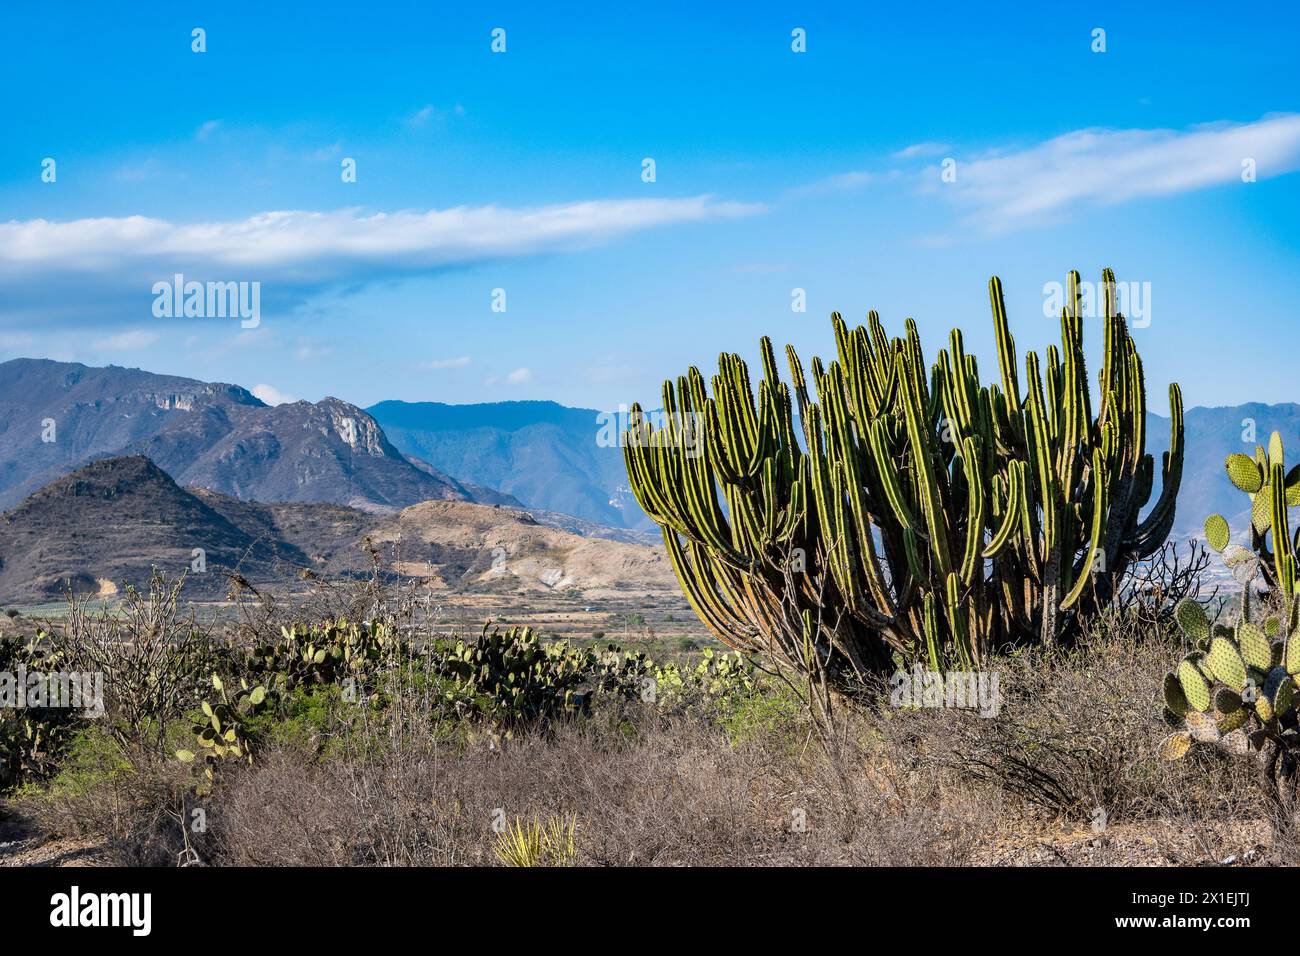 Riesenkaktus (Myrtillocactus schenckii) in der Wüste. Oaxaca, Mexiko. Stockfoto